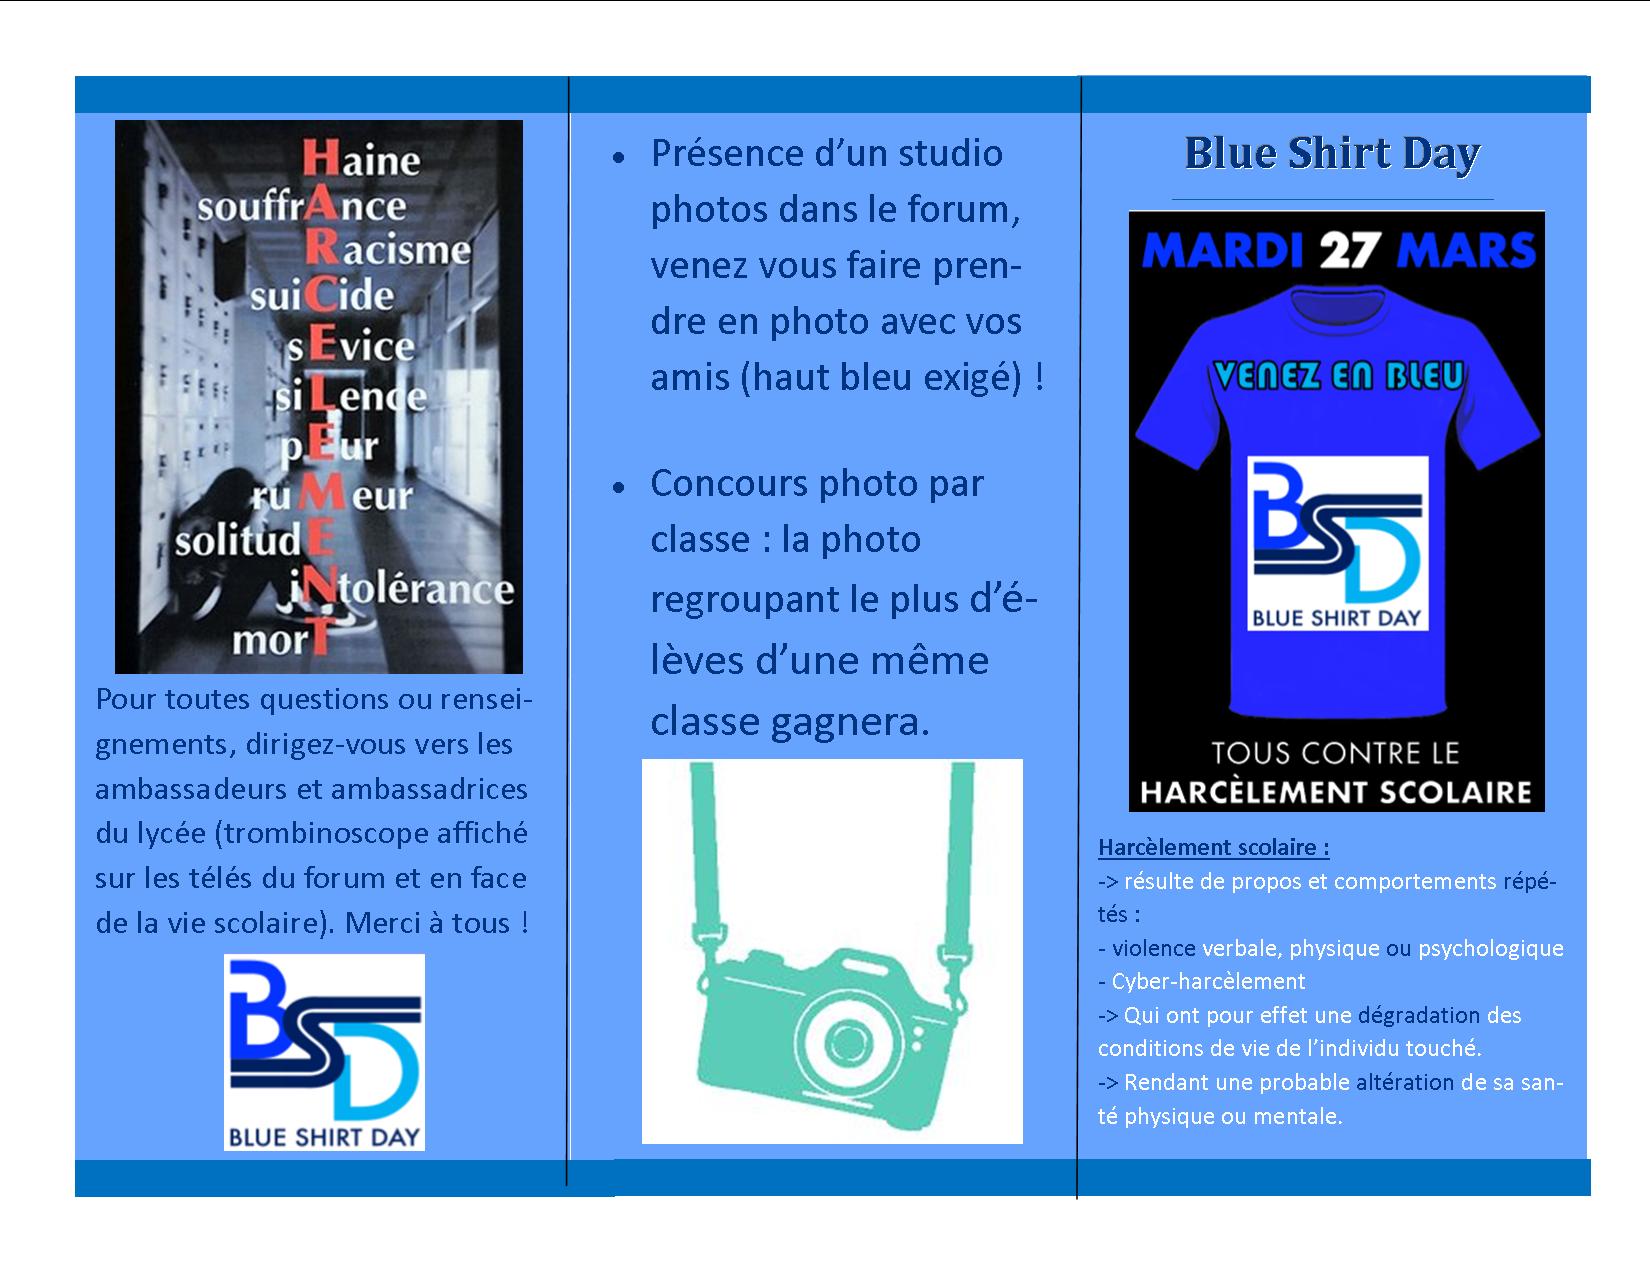 Blue Shirt Day 2018